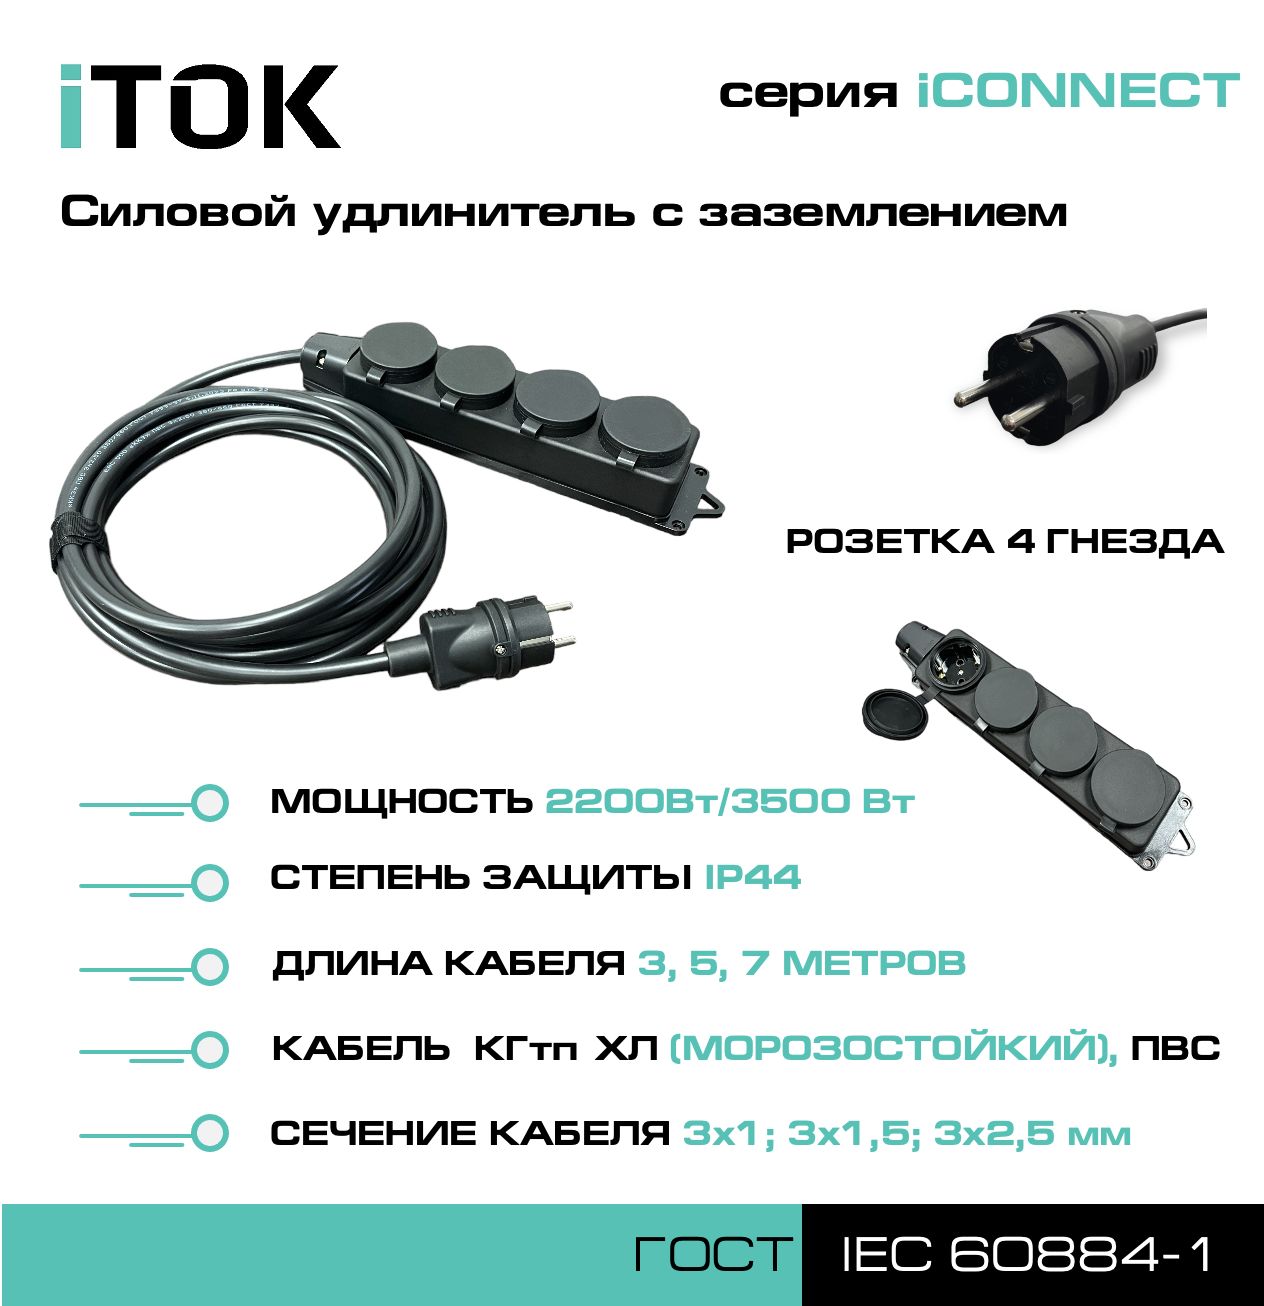 Удлинитель с заземлением серии iTOK iCONNECT ПВС 3х1,5 мм 4 гнезда IP44 7 м